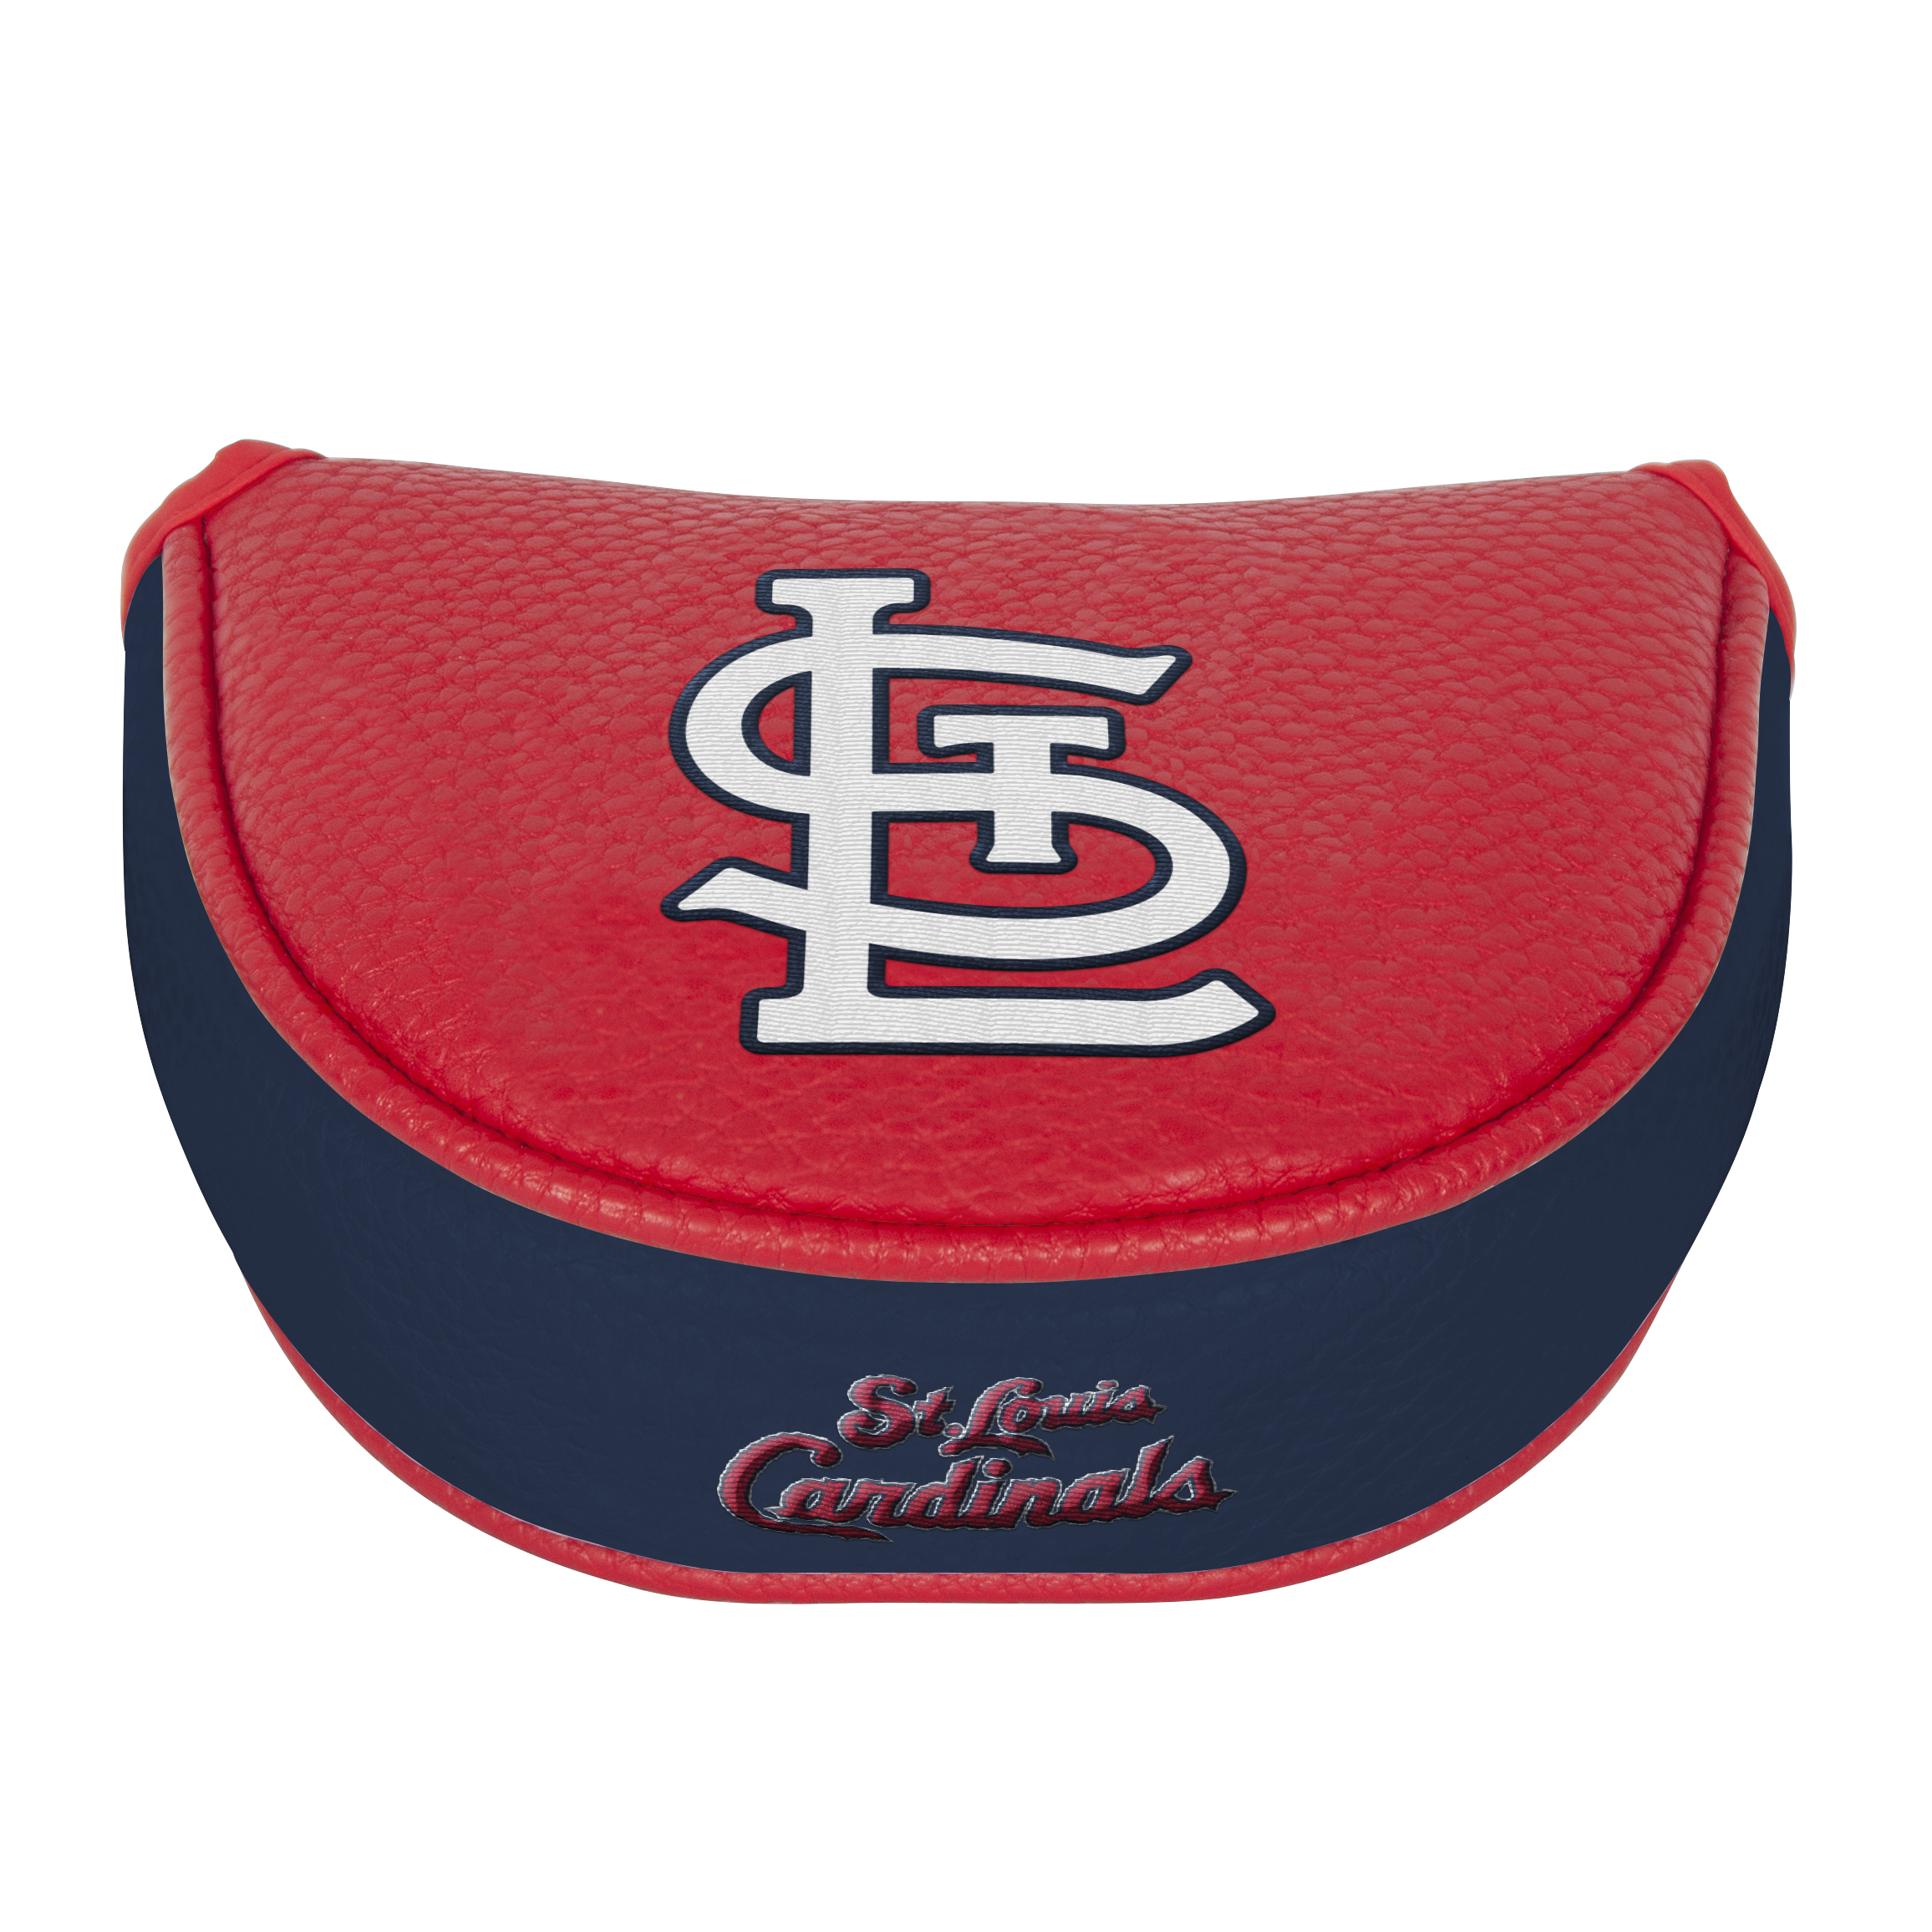 Team Effort MLB Mallet Putter Cover 6012085 - St. Louis Cardinals